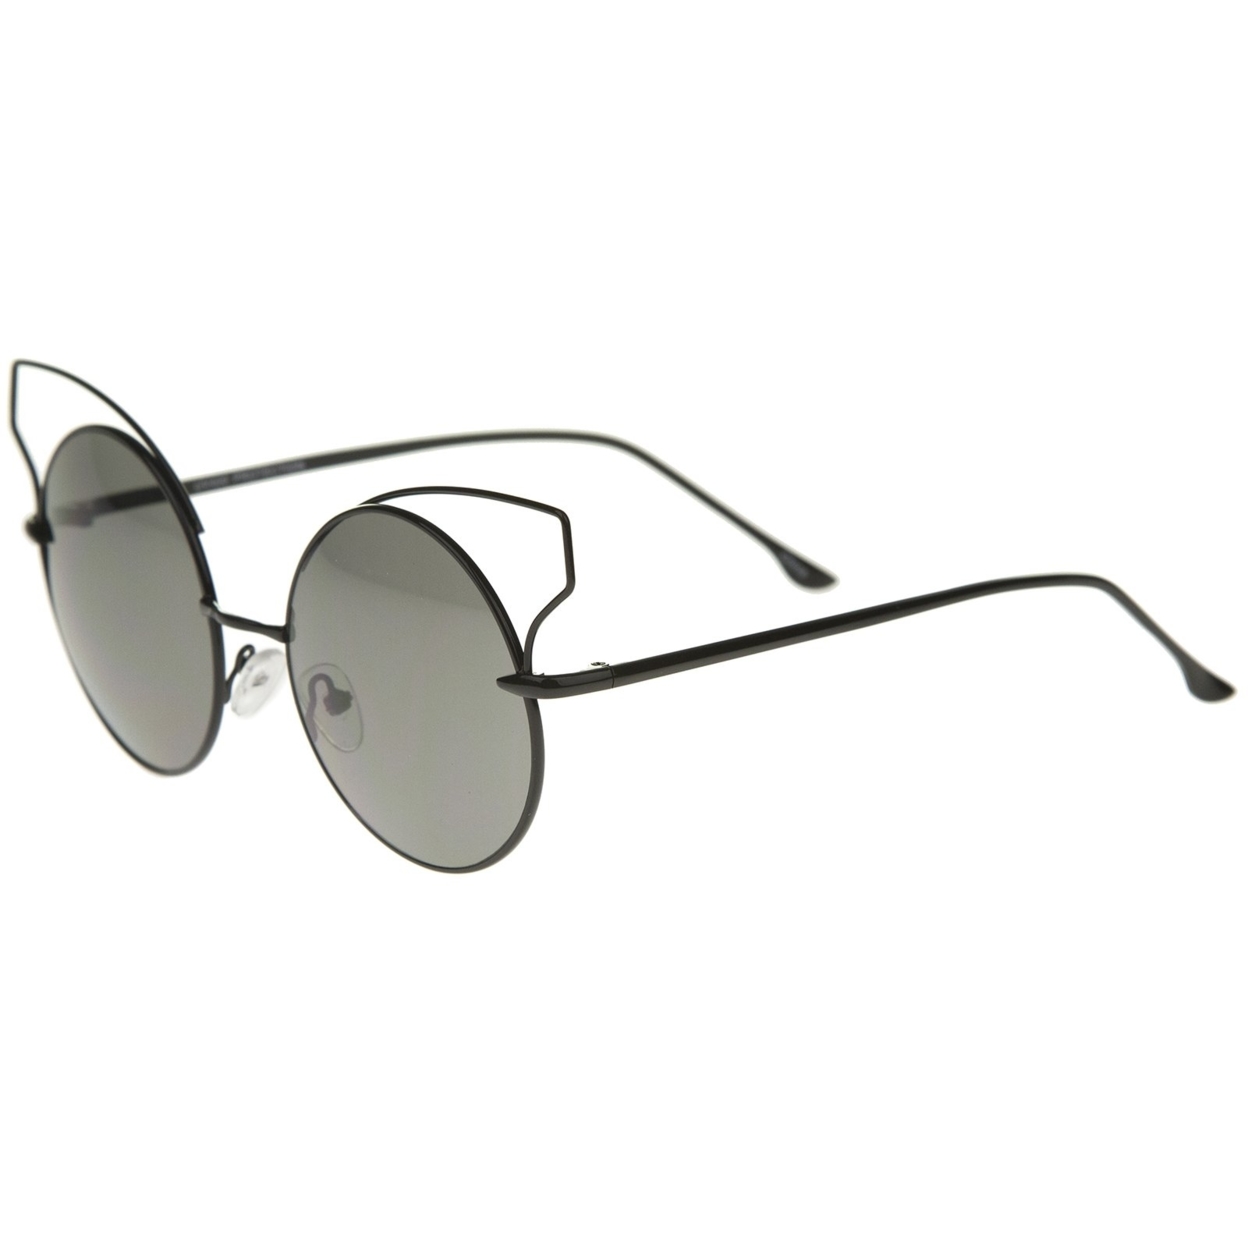 Women's Full Metal Open Design Frame Round Cat Eye Sunglasses 55mm - White / Smoke